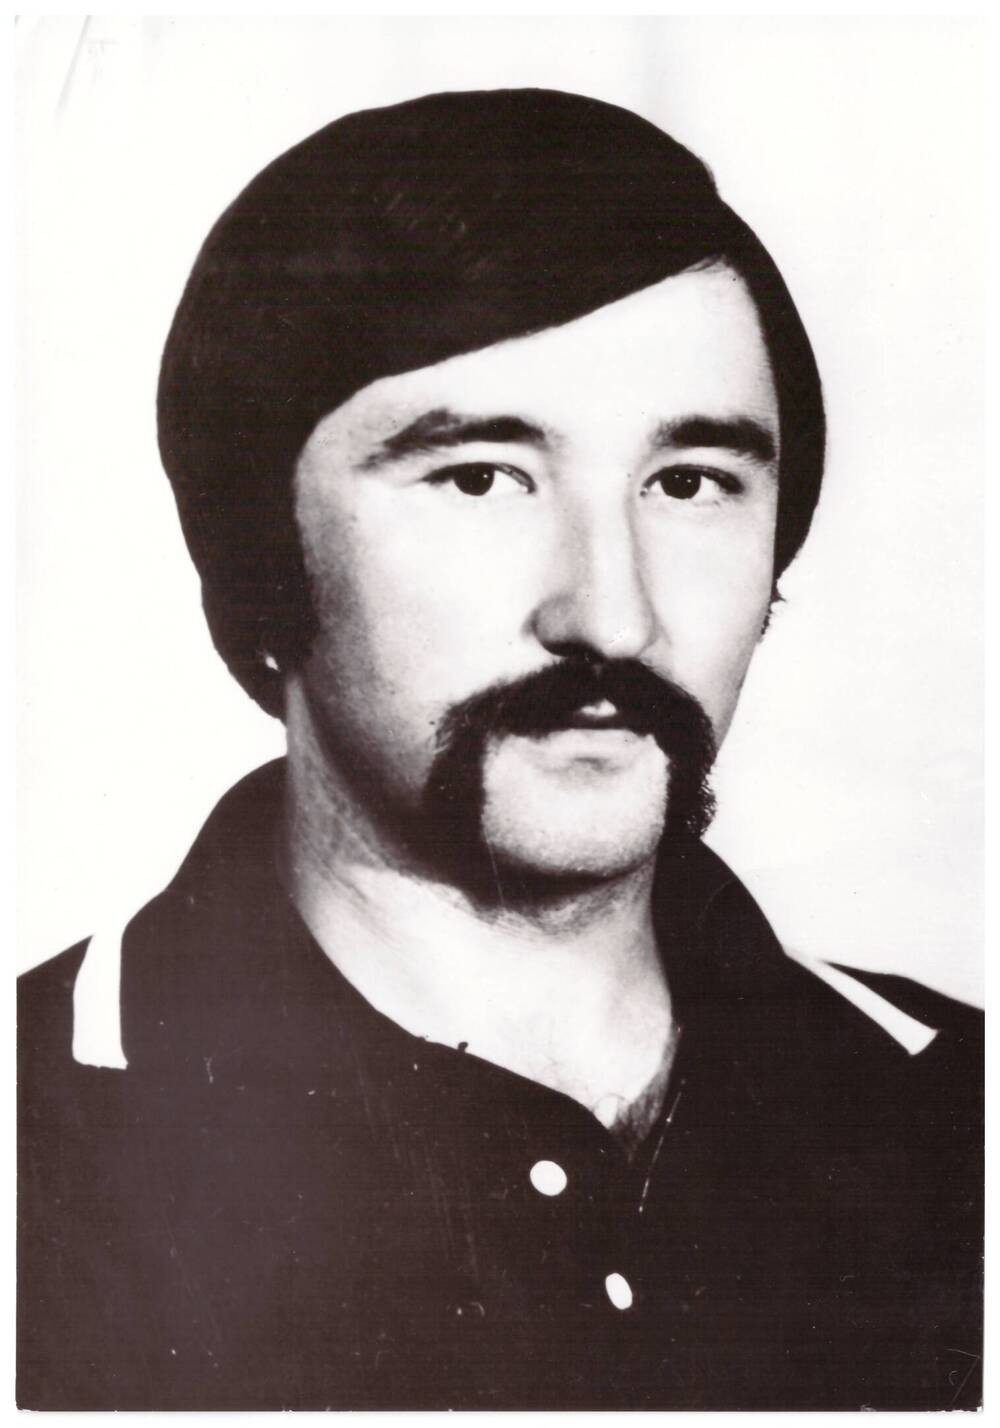 Фотопортрет черно-белый. Евгенов Михаил Васильевич, первый секретарь Мамонтовского РК ВЛКСМ с 1978 по 1984 год.